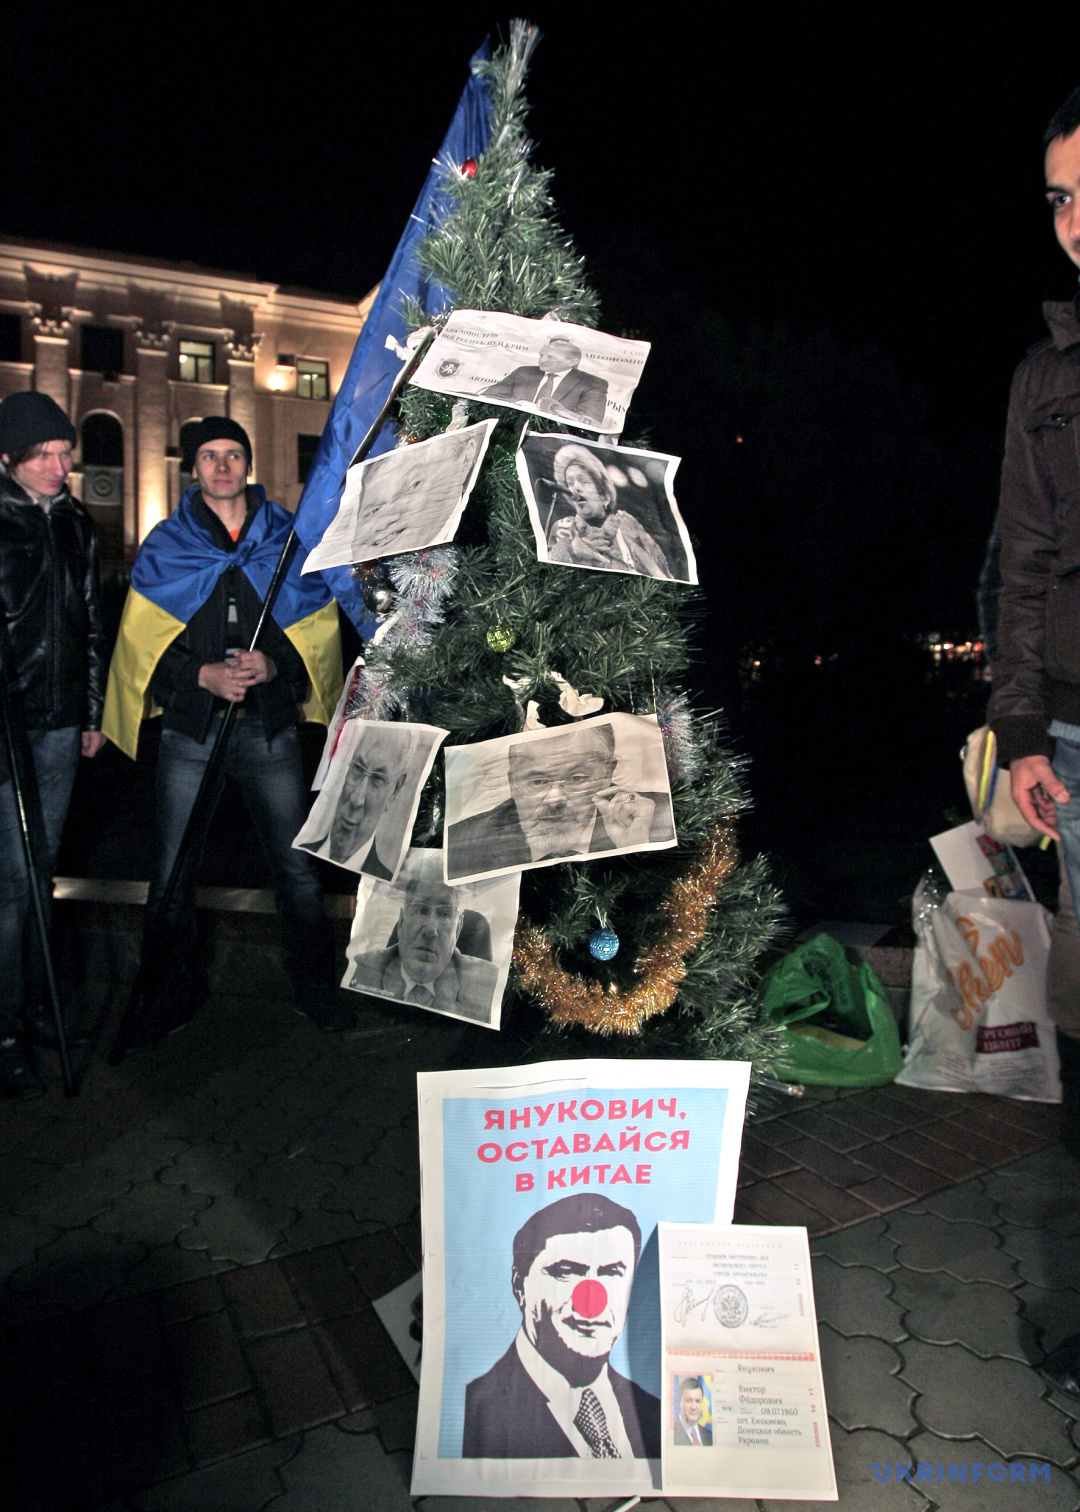 Мітинг студентів на підтримку протестів у столиці, Сімферополь, Крим, 4 грудня 2013 року. / Фото: Арвідас Шеметас